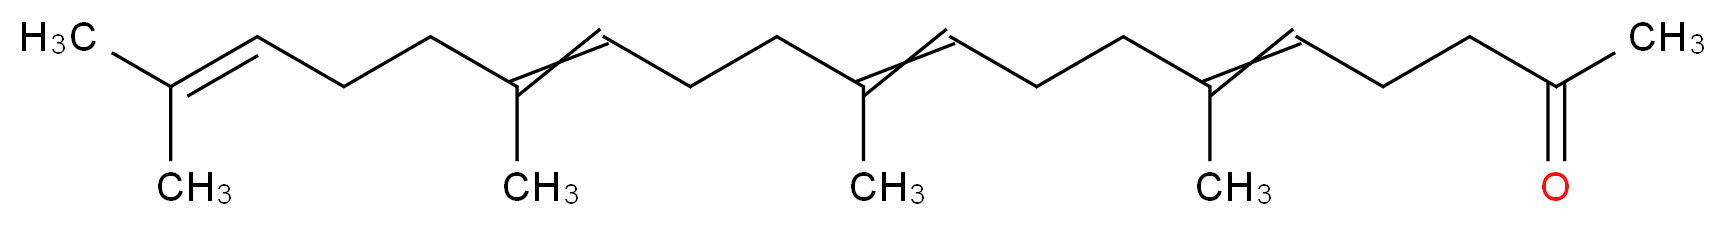 6,10,14,18-tetramethylnonadeca-5,9,13,17-tetraen-2-one_分子结构_CAS_6809-52-5